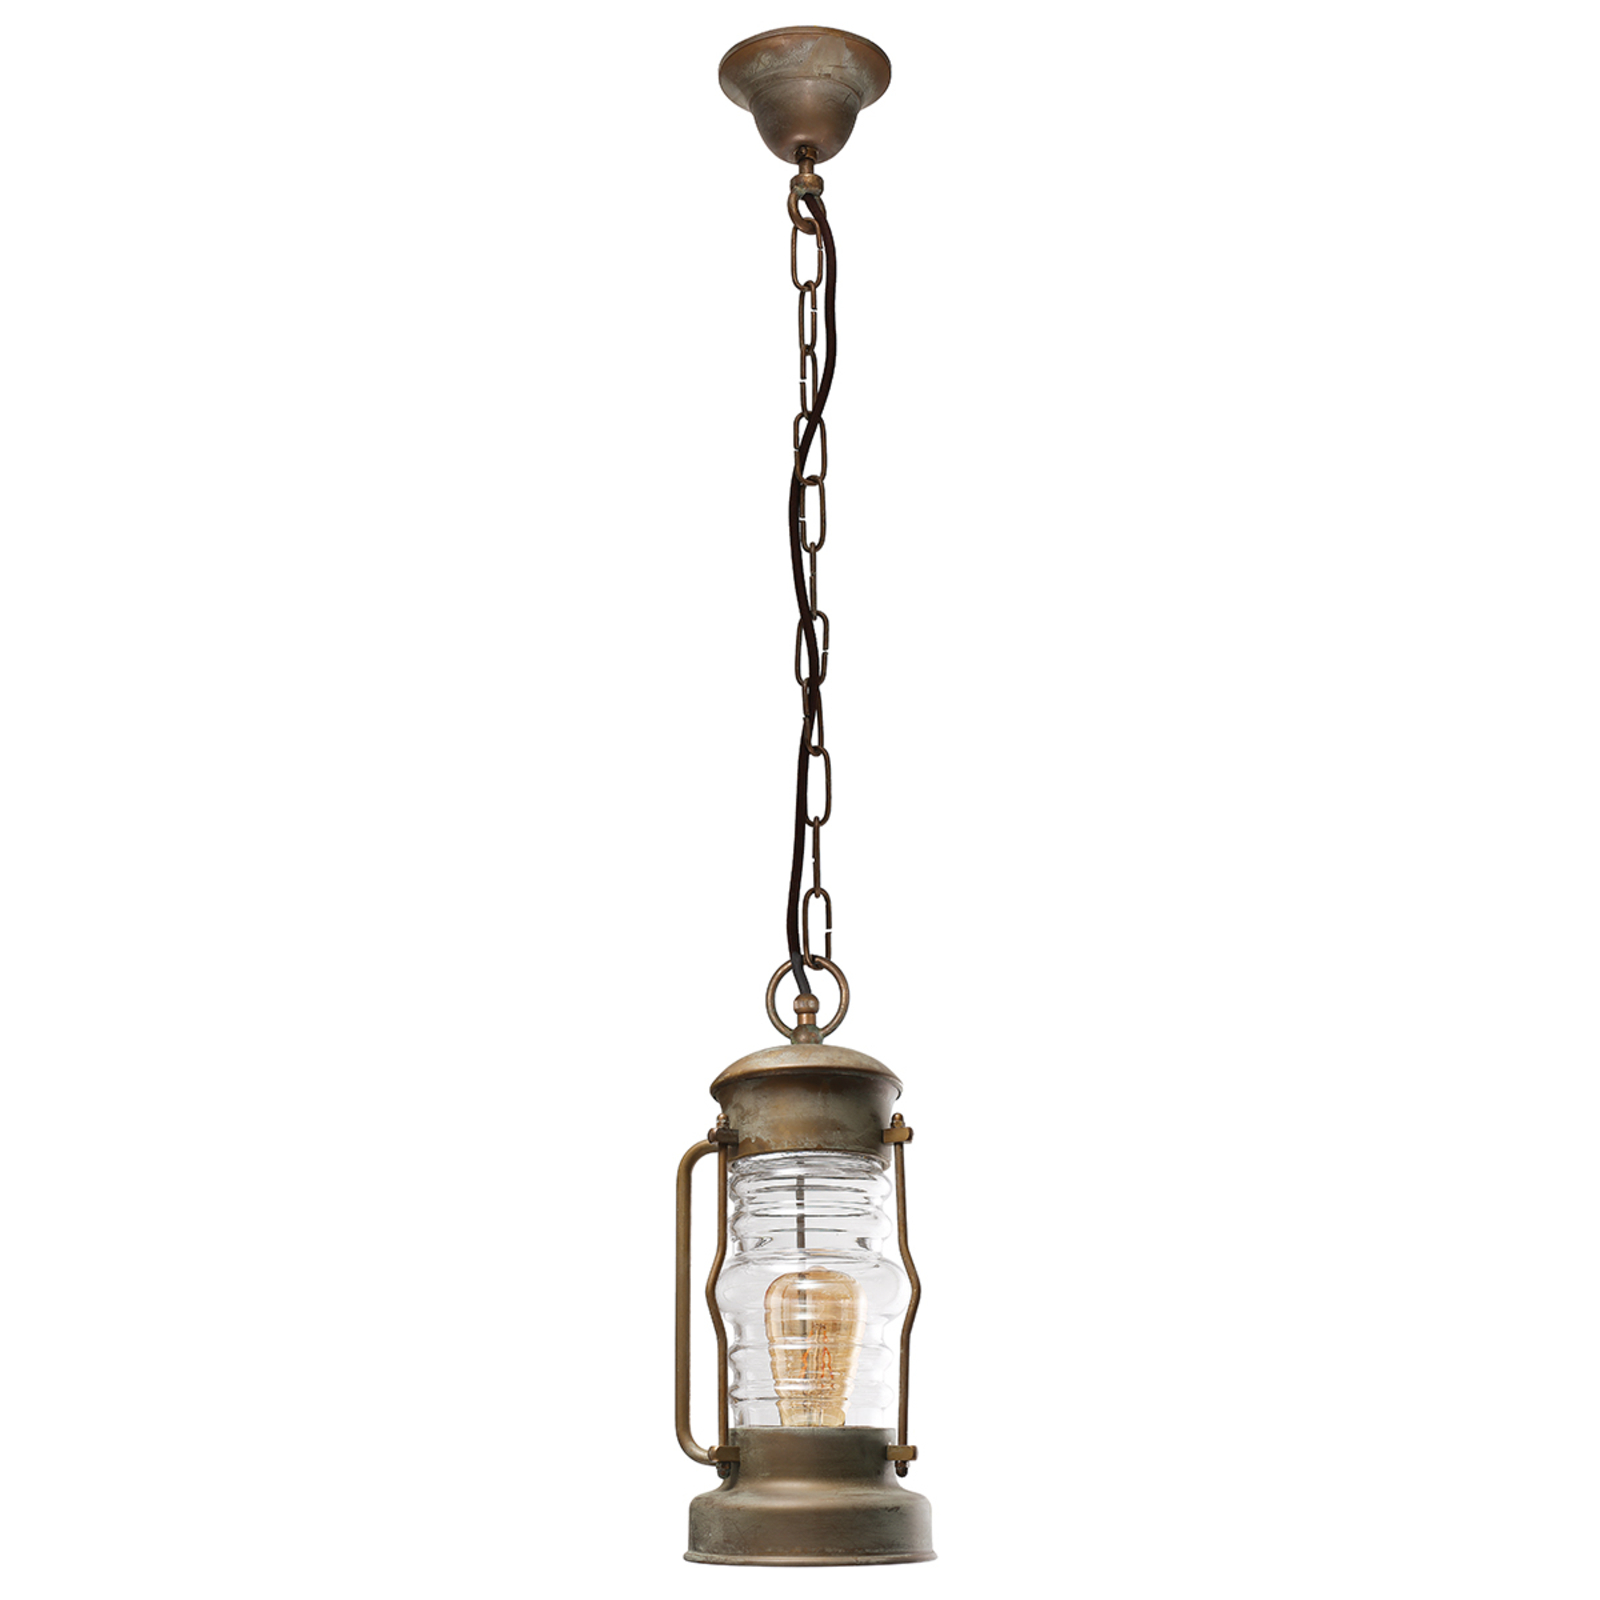 Lampa wisząca Antiko w kształcie latarni, odporność na działanie wody